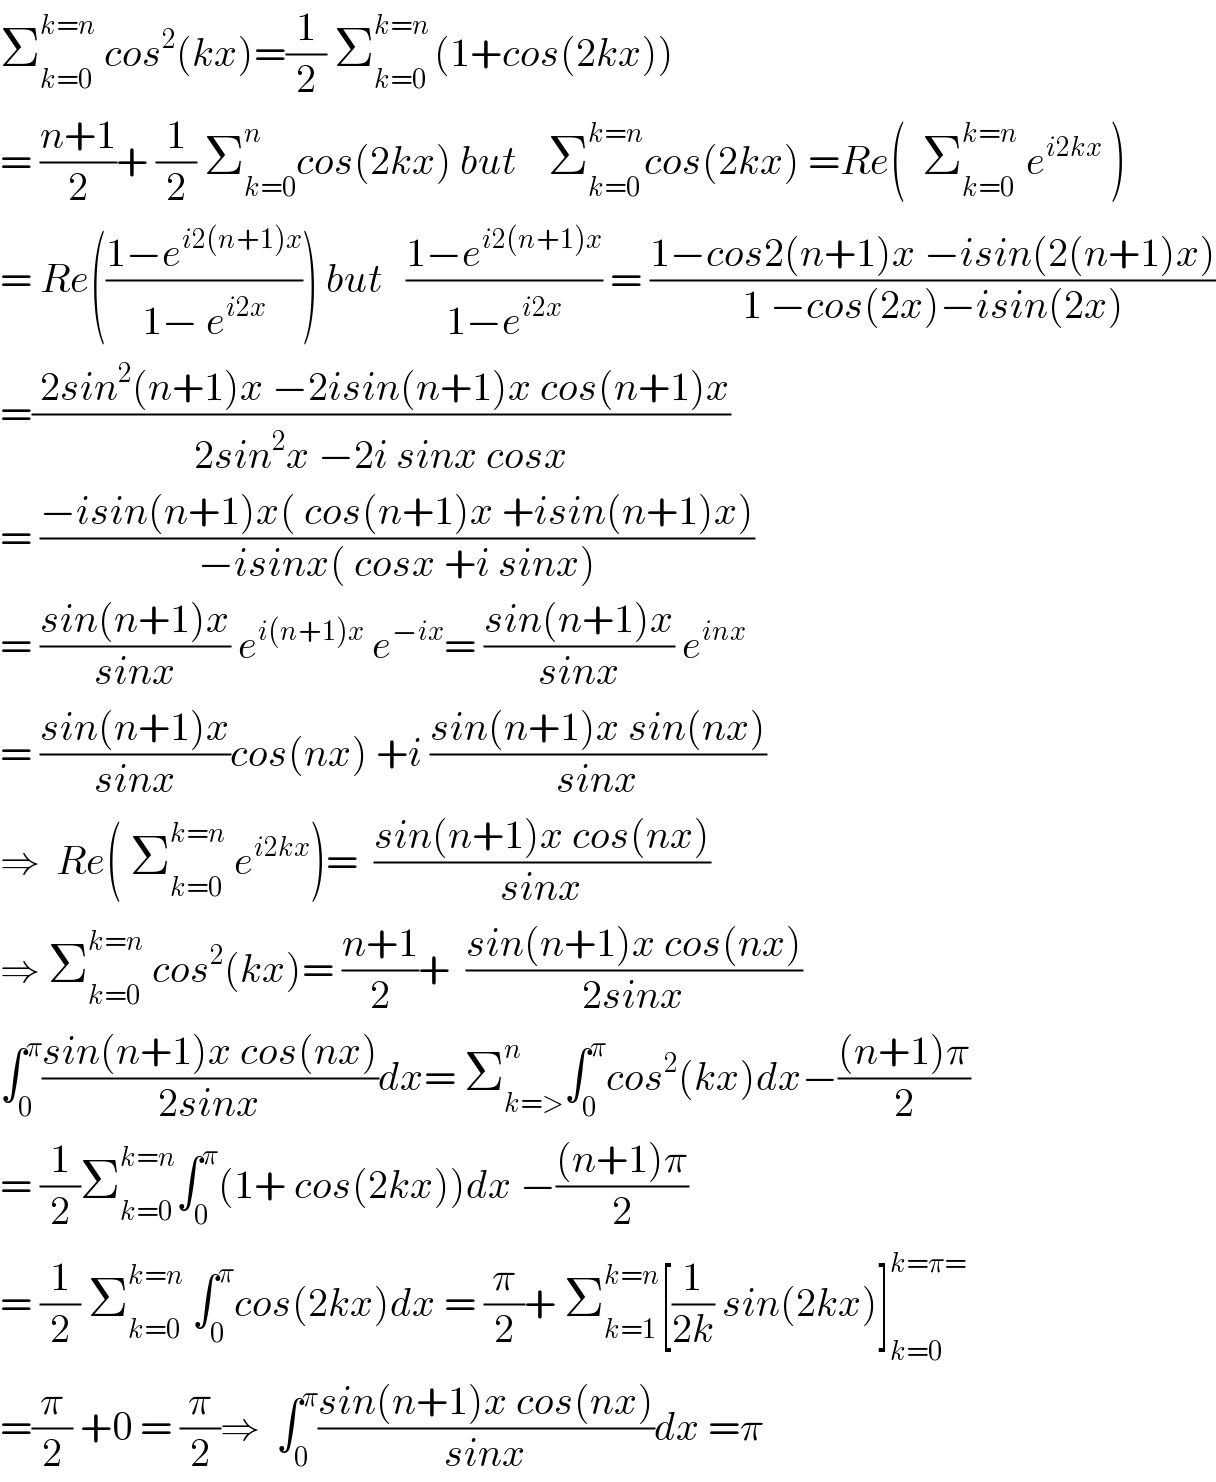 Σ_(k=0) ^(k=n)  cos^2 (kx)=(1/2) Σ_(k=0) ^(k=n ) (1+cos(2kx))  = ((n+1)/2)+ (1/2) Σ_(k=0) ^n cos(2kx) but    Σ_(k=0) ^(k=n) cos(2kx) =Re(  Σ_(k=0) ^(k=n)  e^(i2kx)  )  = Re(((1−e^(i2(n+1)x) )/(1− e^(i2x) ))) but   ((1−e^(i2(n+1)x) )/(1−e^(i2x) )) = ((1−cos2(n+1)x −isin(2(n+1)x))/(1 −cos(2x)−isin(2x)))  =(( 2sin^2 (n+1)x −2isin(n+1)x cos(n+1)x)/(2sin^2 x −2i sinx cosx))  = ((−isin(n+1)x( cos(n+1)x +isin(n+1)x))/(−isinx( cosx +i sinx)))  = ((sin(n+1)x)/(sinx)) e^(i(n+1)x)  e^(−ix) = ((sin(n+1)x)/(sinx)) e^(inx)   = ((sin(n+1)x)/(sinx))cos(nx) +i ((sin(n+1)x sin(nx))/(sinx))  ⇒  Re( Σ_(k=0) ^(k=n)  e^(i2kx) )=  ((sin(n+1)x cos(nx))/(sinx))  ⇒ Σ_(k=0) ^(k=n)  cos^2 (kx)= ((n+1)/2)+  ((sin(n+1)x cos(nx))/(2sinx))  ∫_0 ^π ((sin(n+1)x cos(nx))/(2sinx))dx= Σ_(k=>) ^n ∫_0 ^π cos^2 (kx)dx−(((n+1)π)/2)  = (1/2)Σ_(k=0) ^(k=n) ∫_0 ^π (1+ cos(2kx))dx −(((n+1)π)/2)  = (1/2) Σ_(k=0) ^(k=n)  ∫_0 ^π cos(2kx)dx = (π/2)+ Σ_(k=1) ^(k=n) [(1/(2k)) sin(2kx)]_(k=0) ^(k=π=)   =(π/2) +0 = (π/2)⇒  ∫_0 ^π ((sin(n+1)x cos(nx))/(sinx))dx =π  